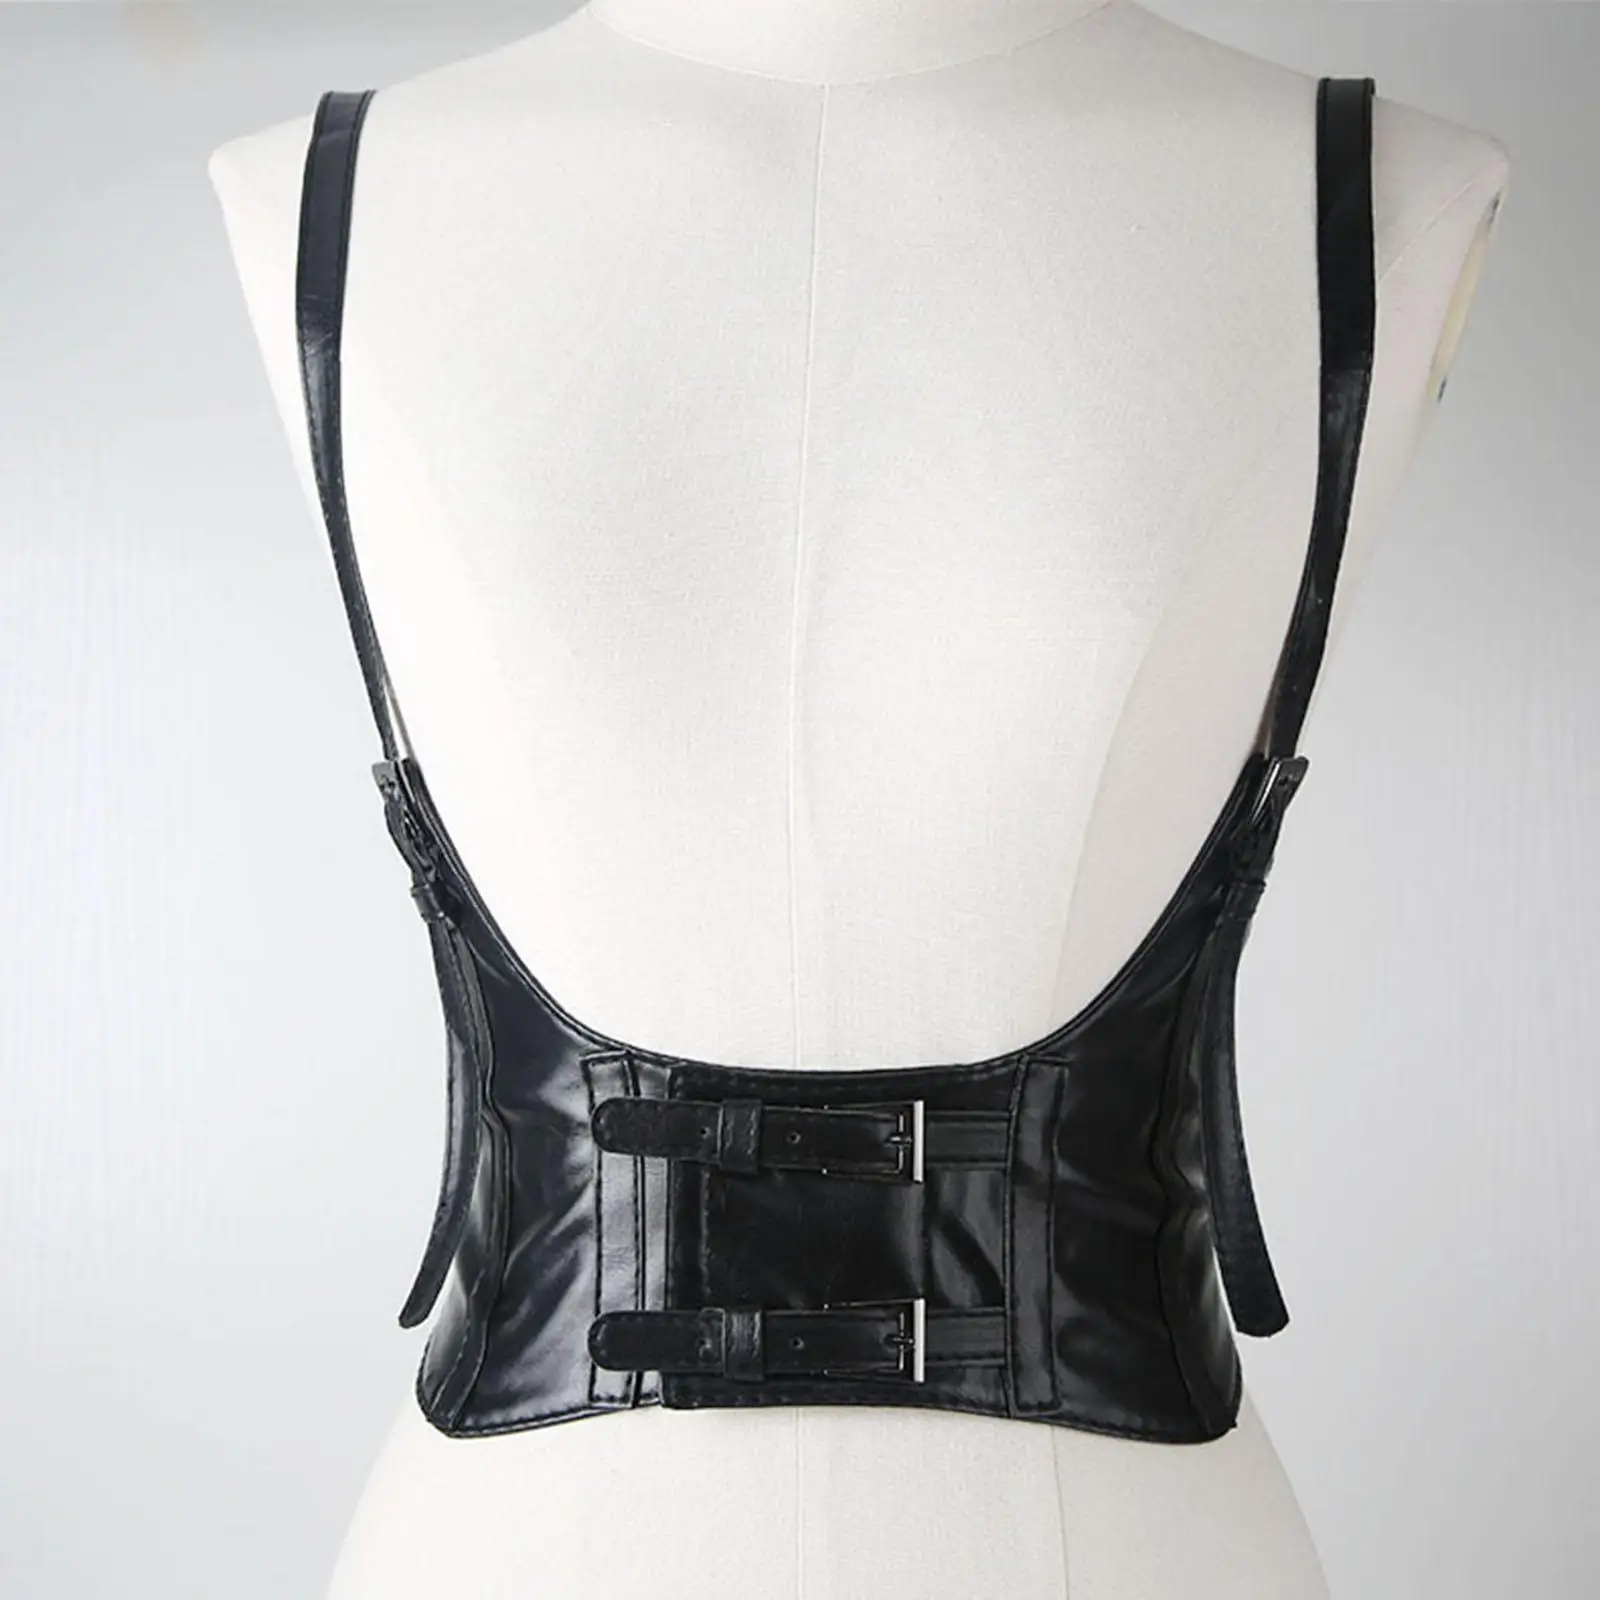 

Fashion Women's Waist Belt Underbust Corset Faux Leather Punk Adjustable Cummerbund Waistband for Dress